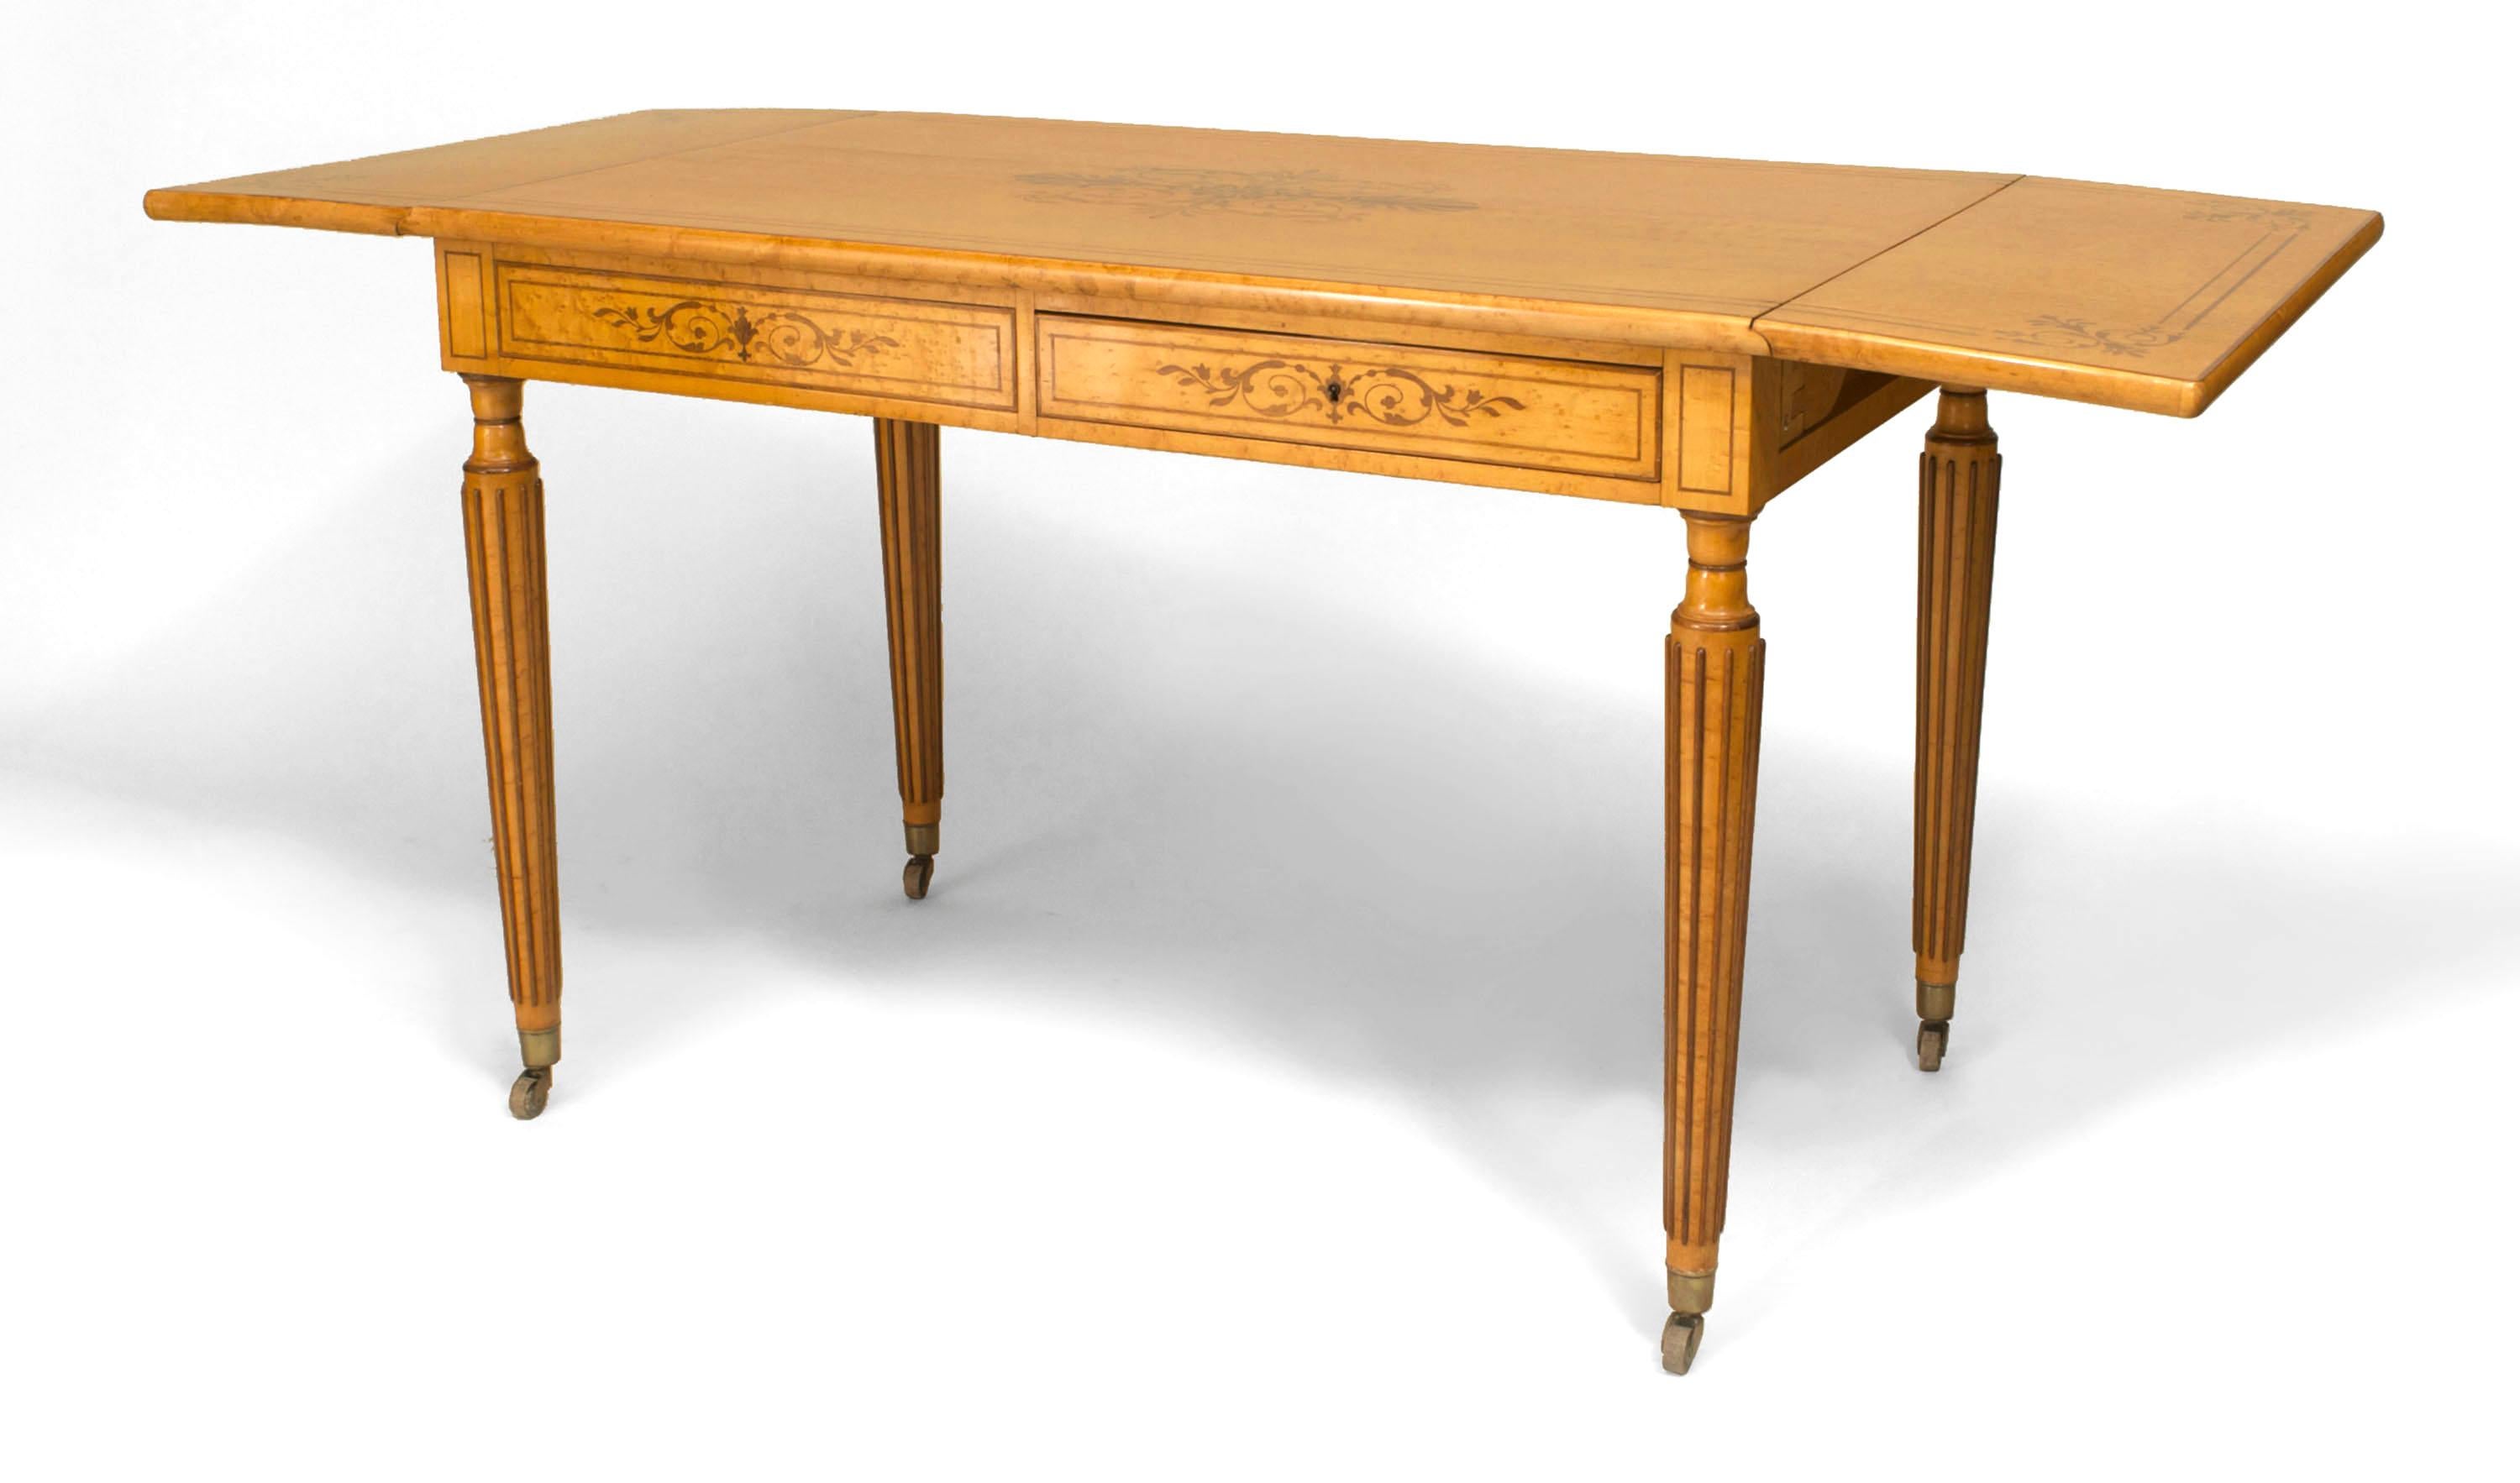 Bureau de table de style Charles X en érable piqué, avec plateau incrusté de marqueterie d'amarante et côtés tombants supportés par 4 pieds fuselés cannelés avec un seul tiroir à l'avant et à l'arrière.